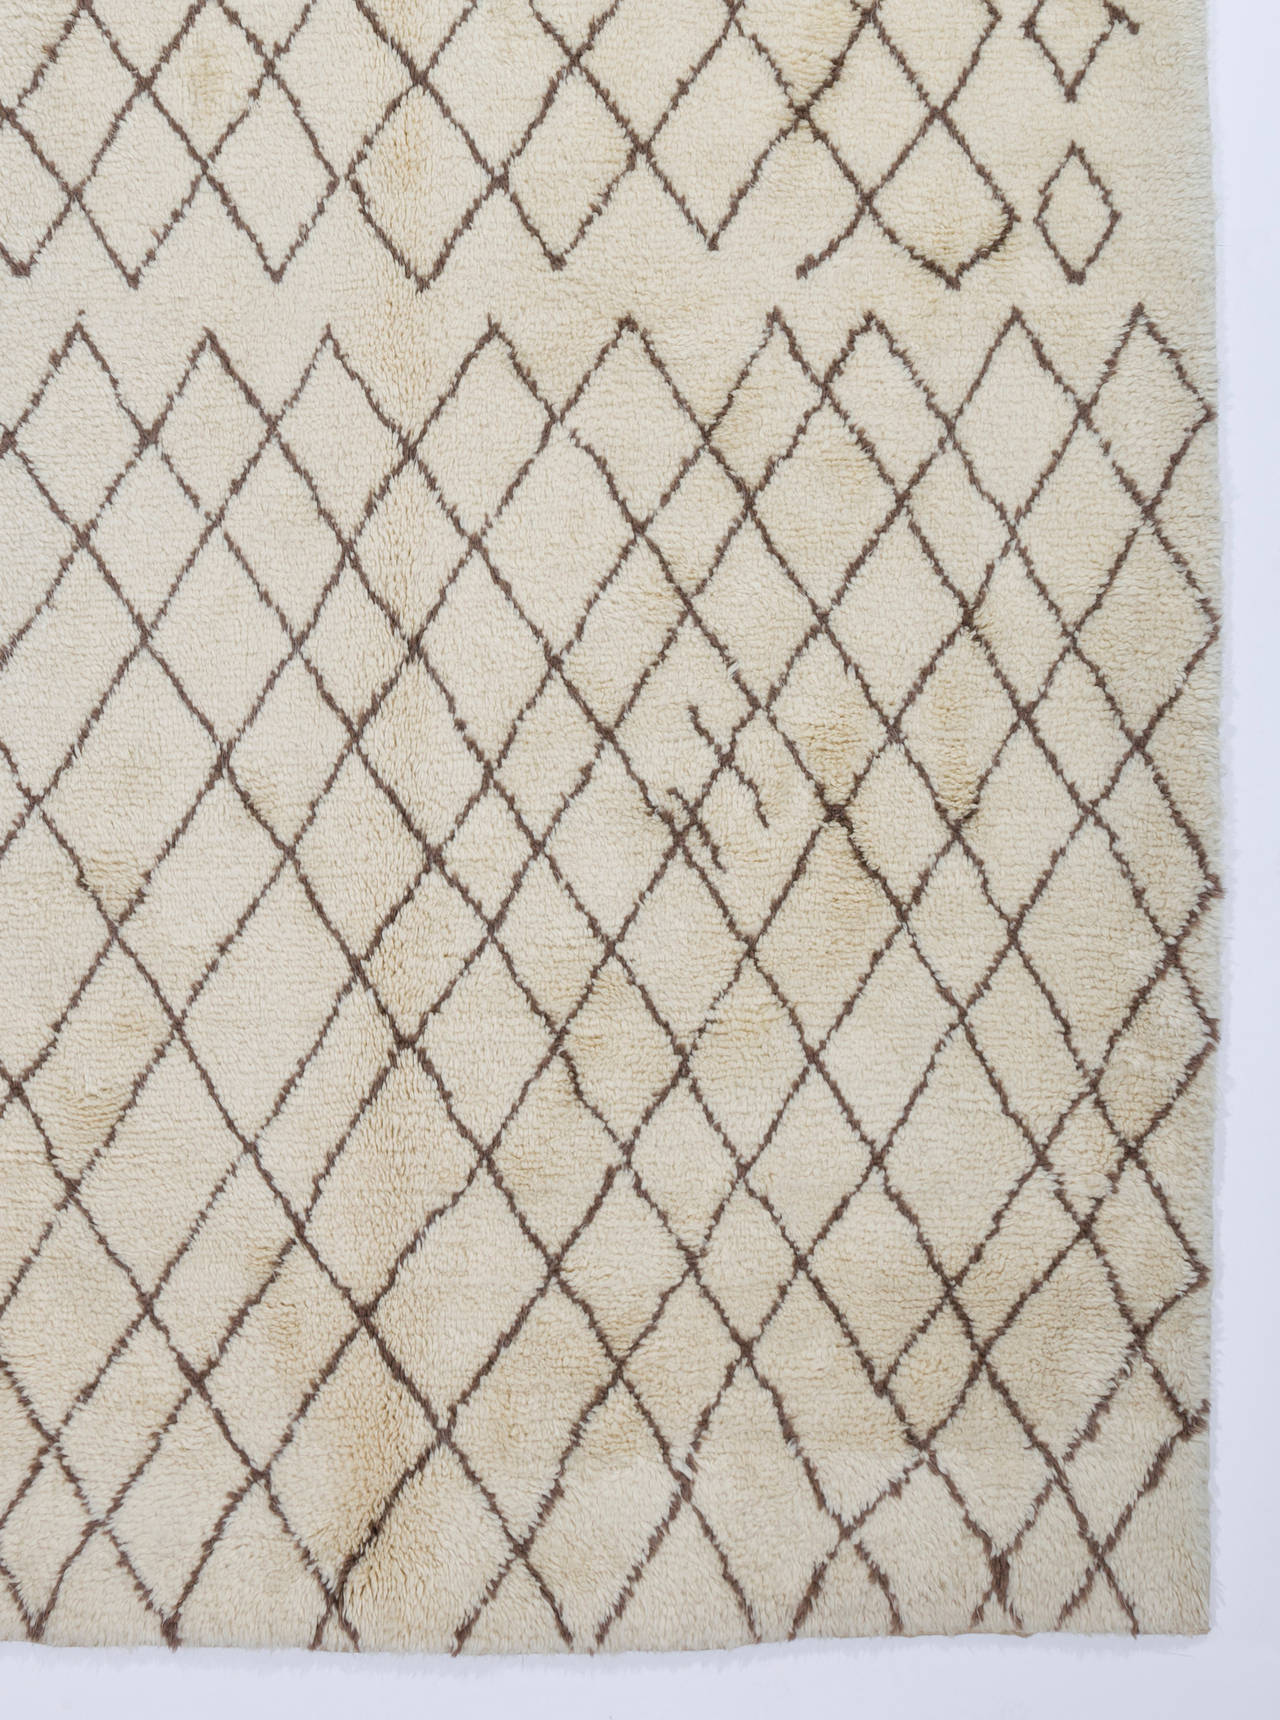 Un nouveau tapis berbère marocain fait main en laine d'agneau naturelle non teintée et filée à la main.
Poil doux, confortable et douillet. Le tapis est disponible tel quel ou, sur demande, il peut être produit sur mesure dans une taille, une